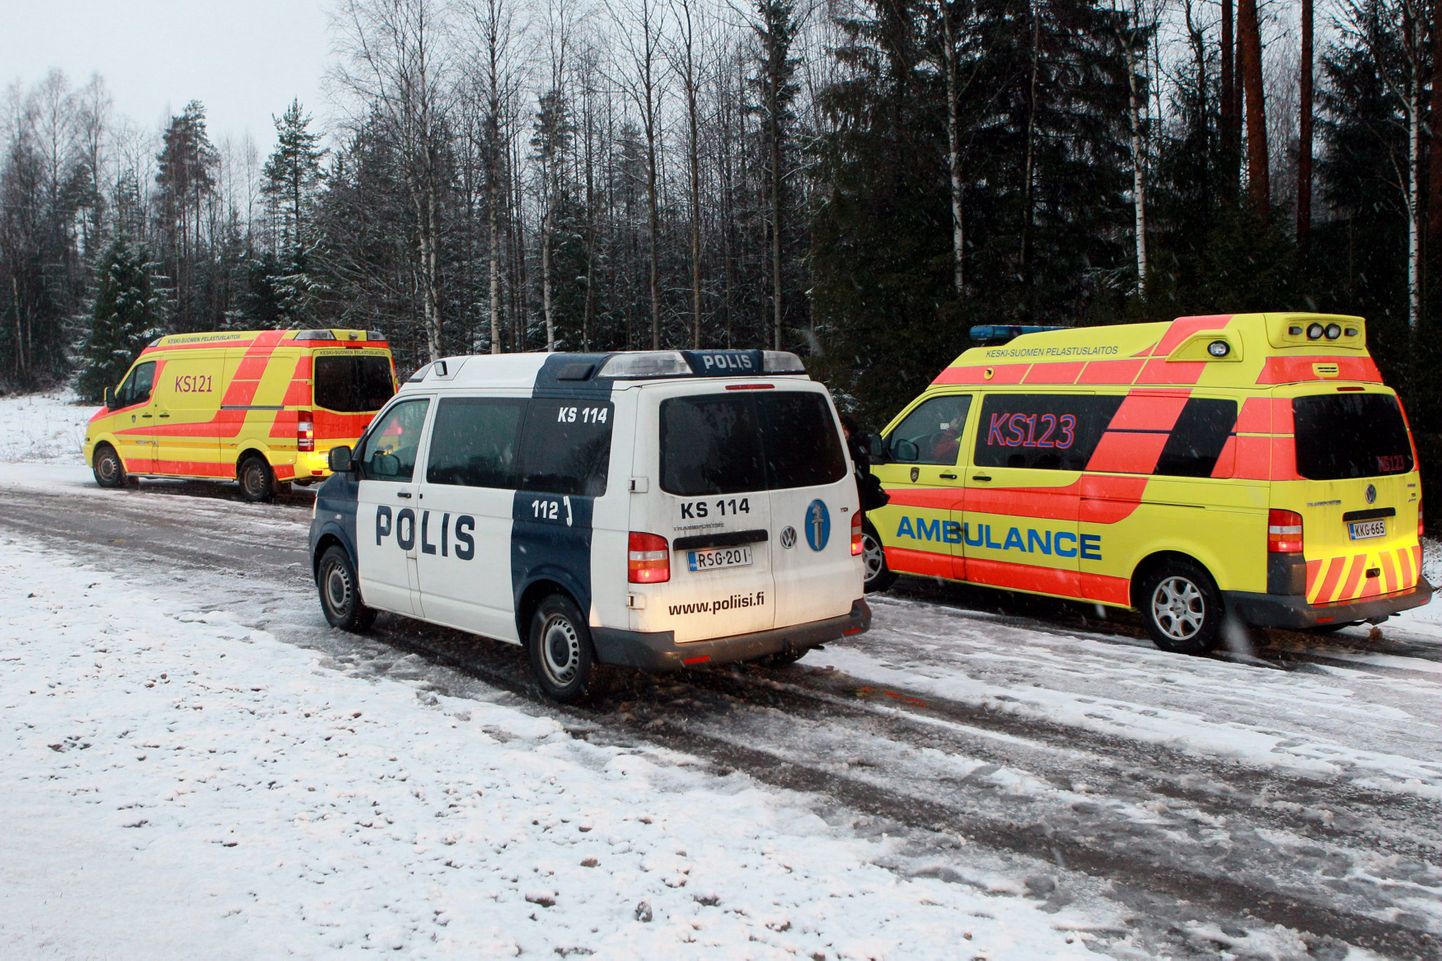 Soome politsei- ja kiirabiautod Jyväskyläs, 30. detsembril 2011. aastal.